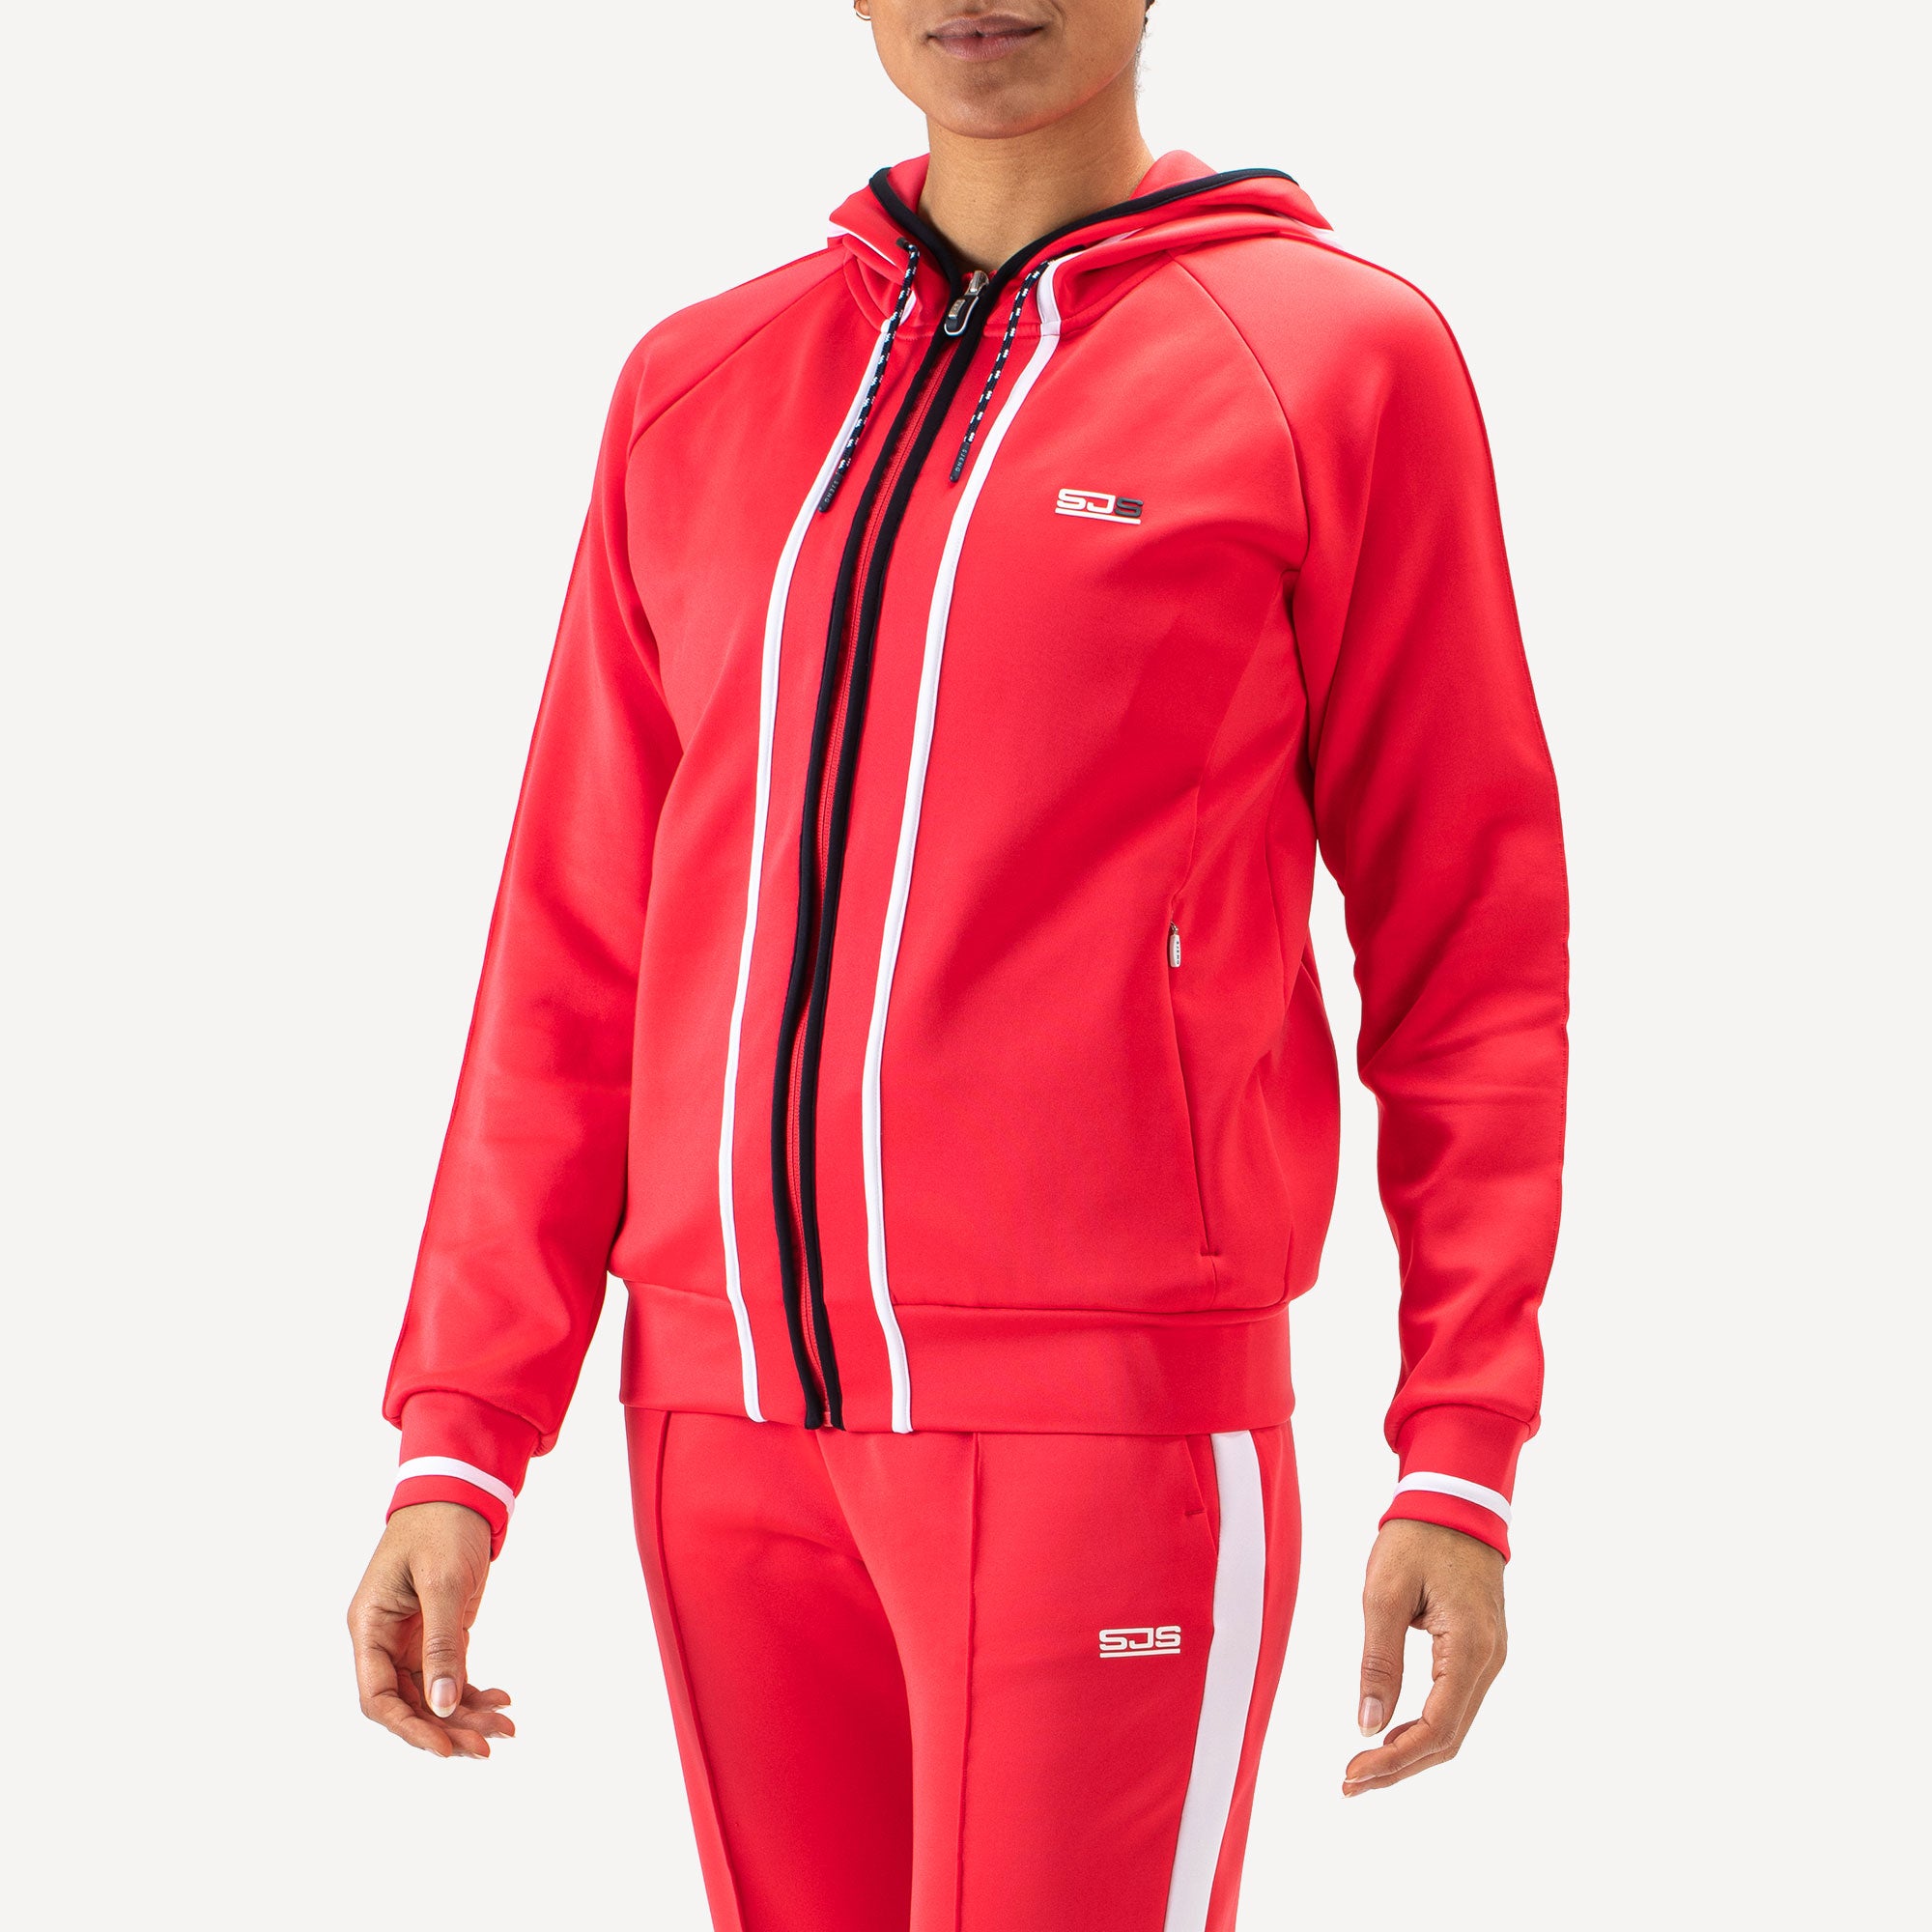 Sjeng Sports Fathia Women's Hooded Tennis Jacket - Red (1)